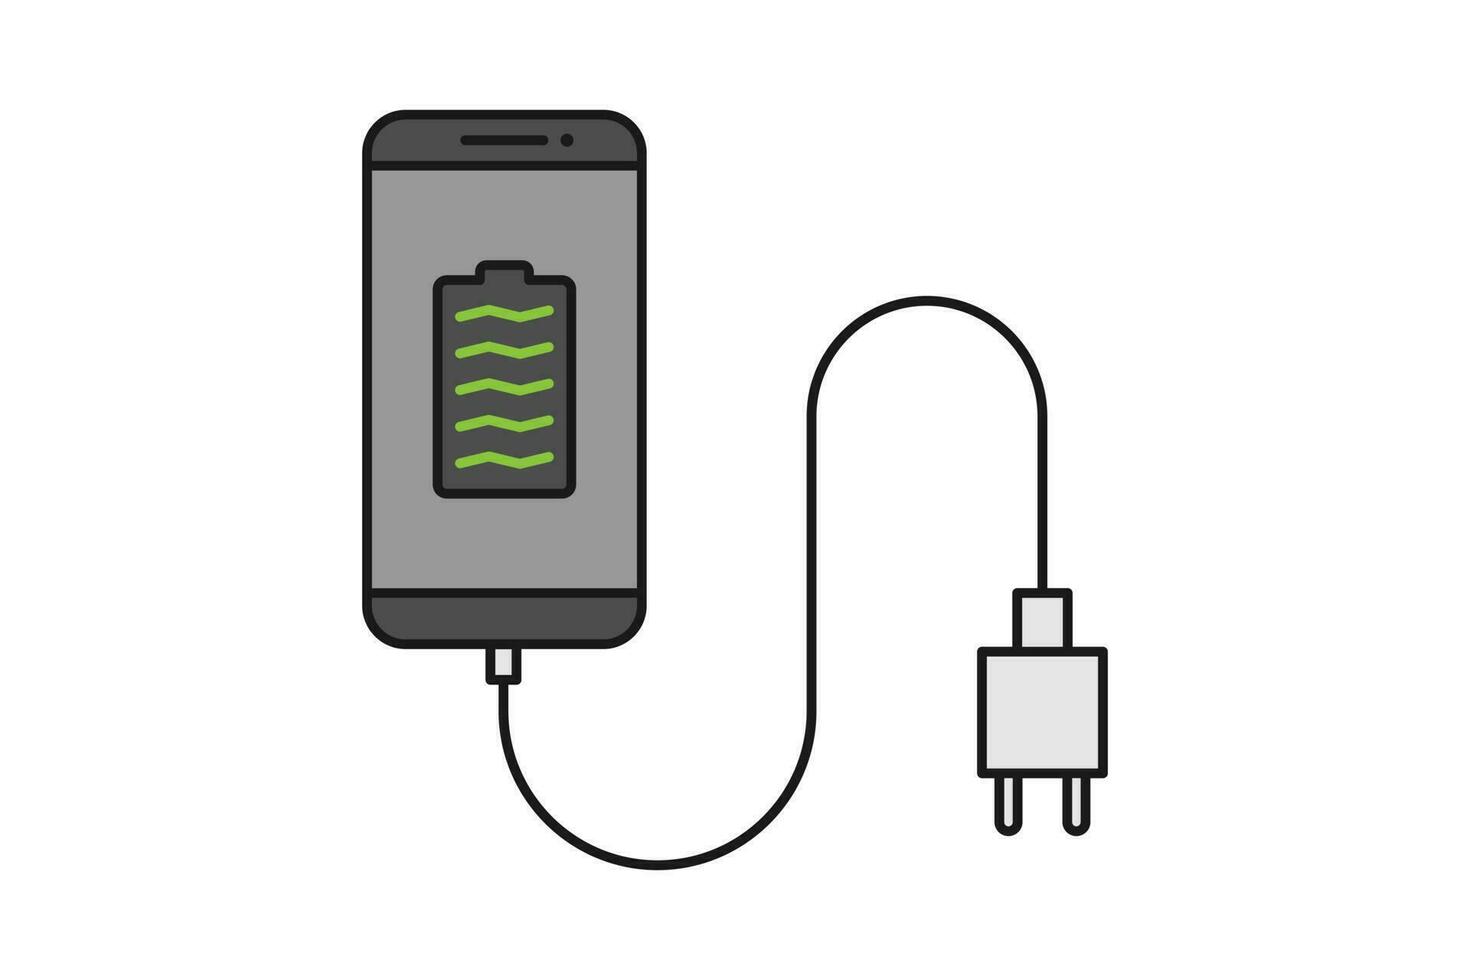 téléphone intelligent chargeur adaptateur ligne icône signe symbole vecteur, téléphone intelligent, électrique prise, adaptateur, plein batterie notification vecteur